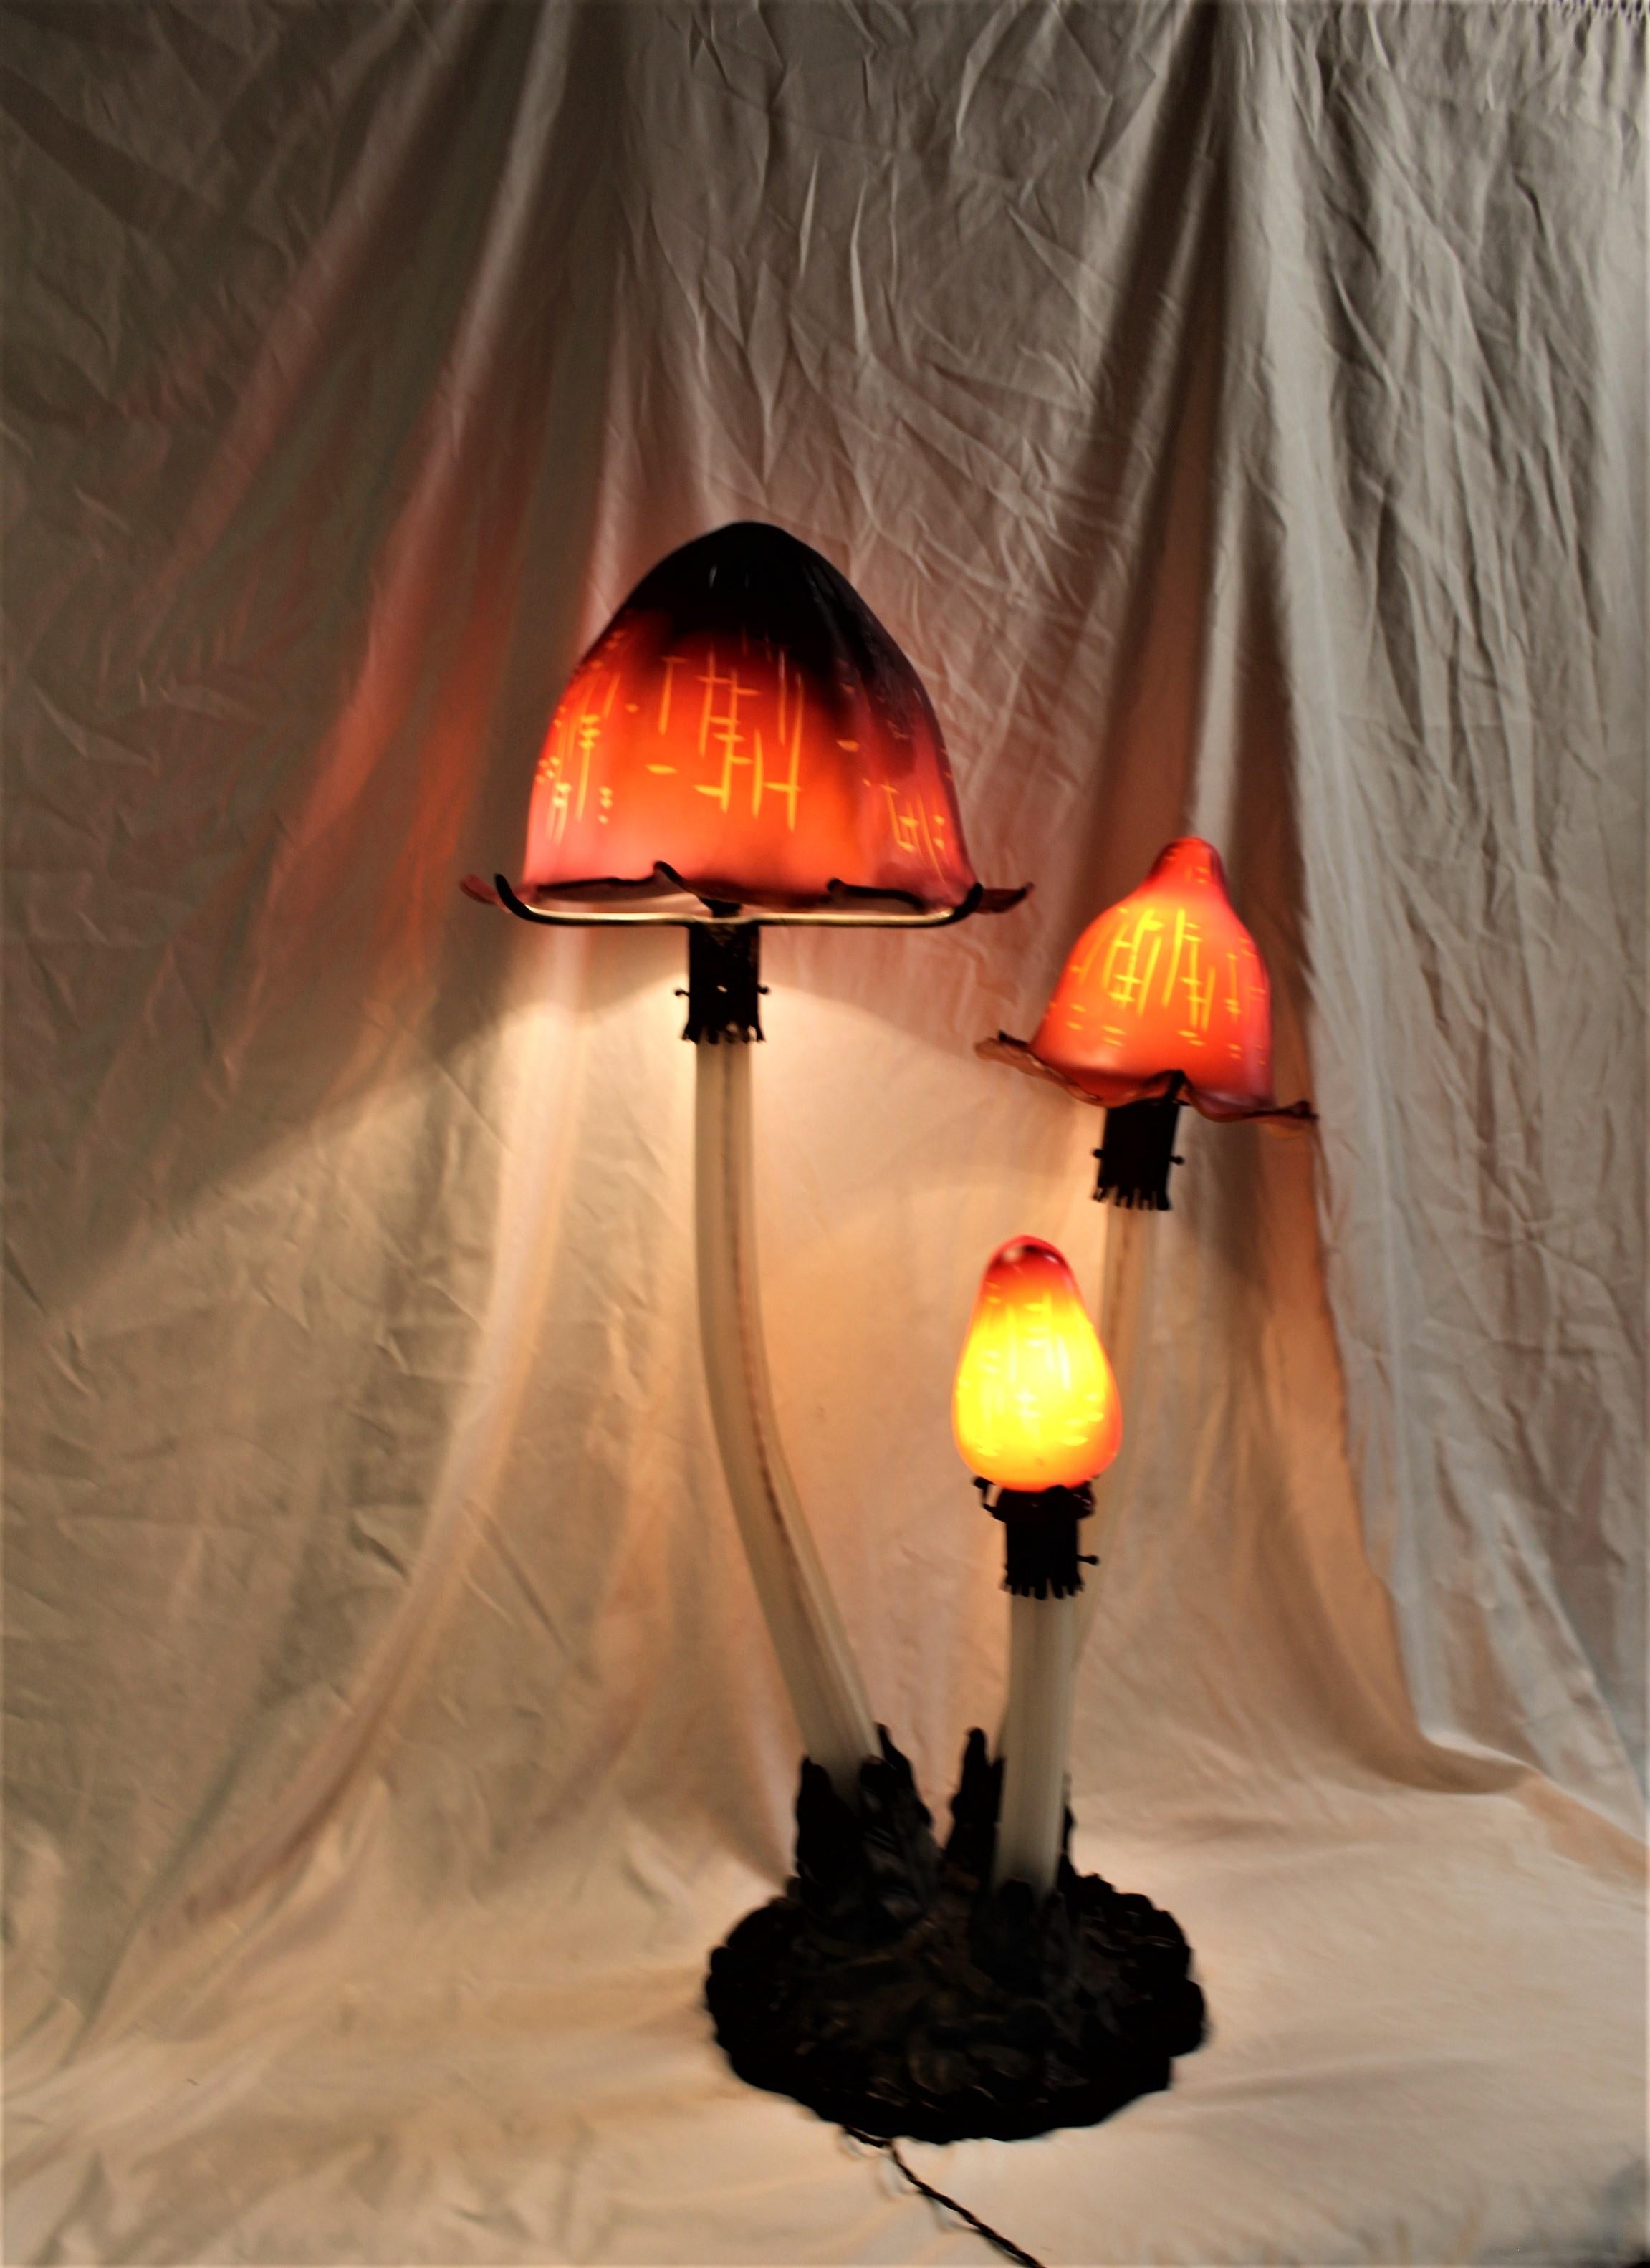 C'est l'une des lampes à champignons les plus célèbres de Galle. Mage personnalisé en Europe pour ressembler exactement à l'original. La grande ombre indique le nom. La base est en bronze. Les tiges sont en verre soufflé. Cette lampe est extrêmement